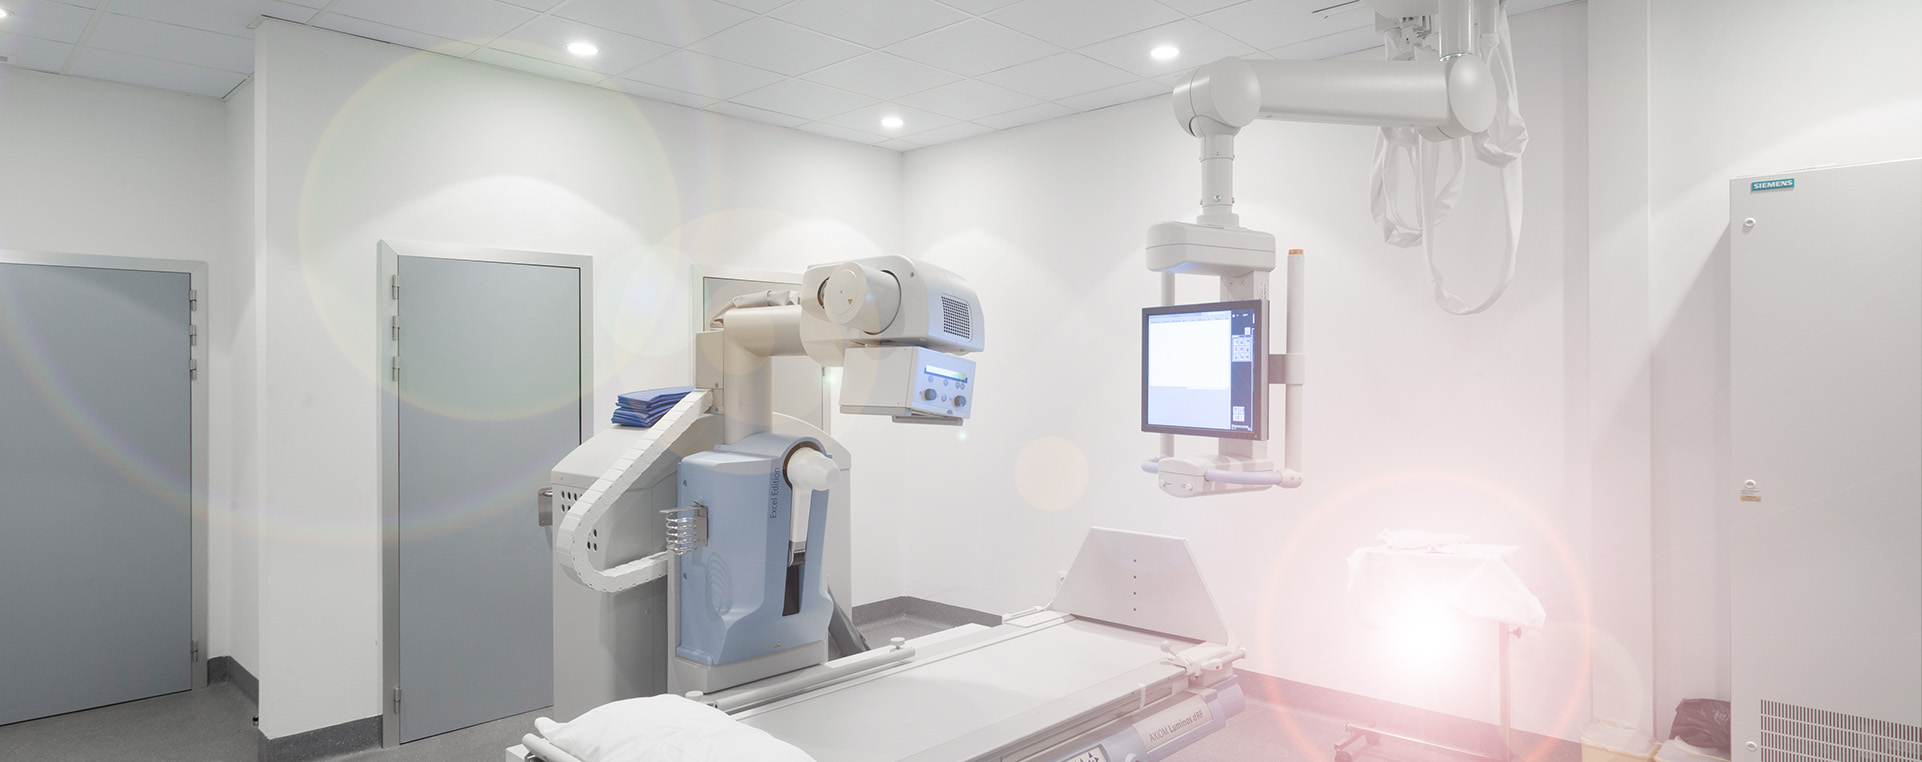 Diagnóstico por imagen - Unidad de radiología, mamografía y ecografía en Bilbao